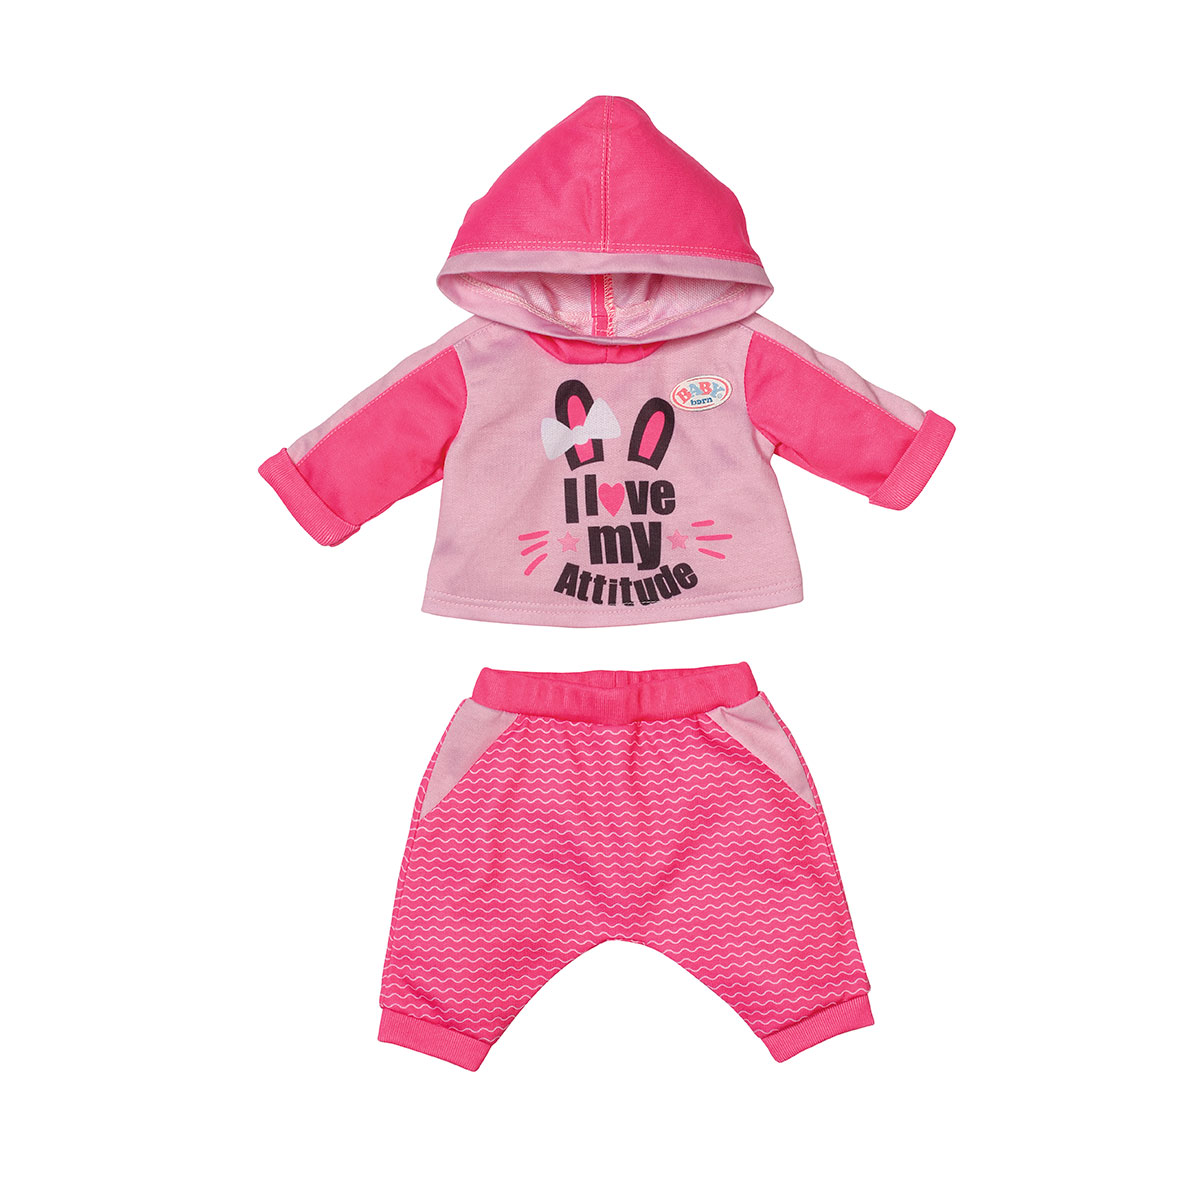 Набор одежды для куклы BABY born Спортивный костюм для бега (43 cm, розовый) (830109-1)